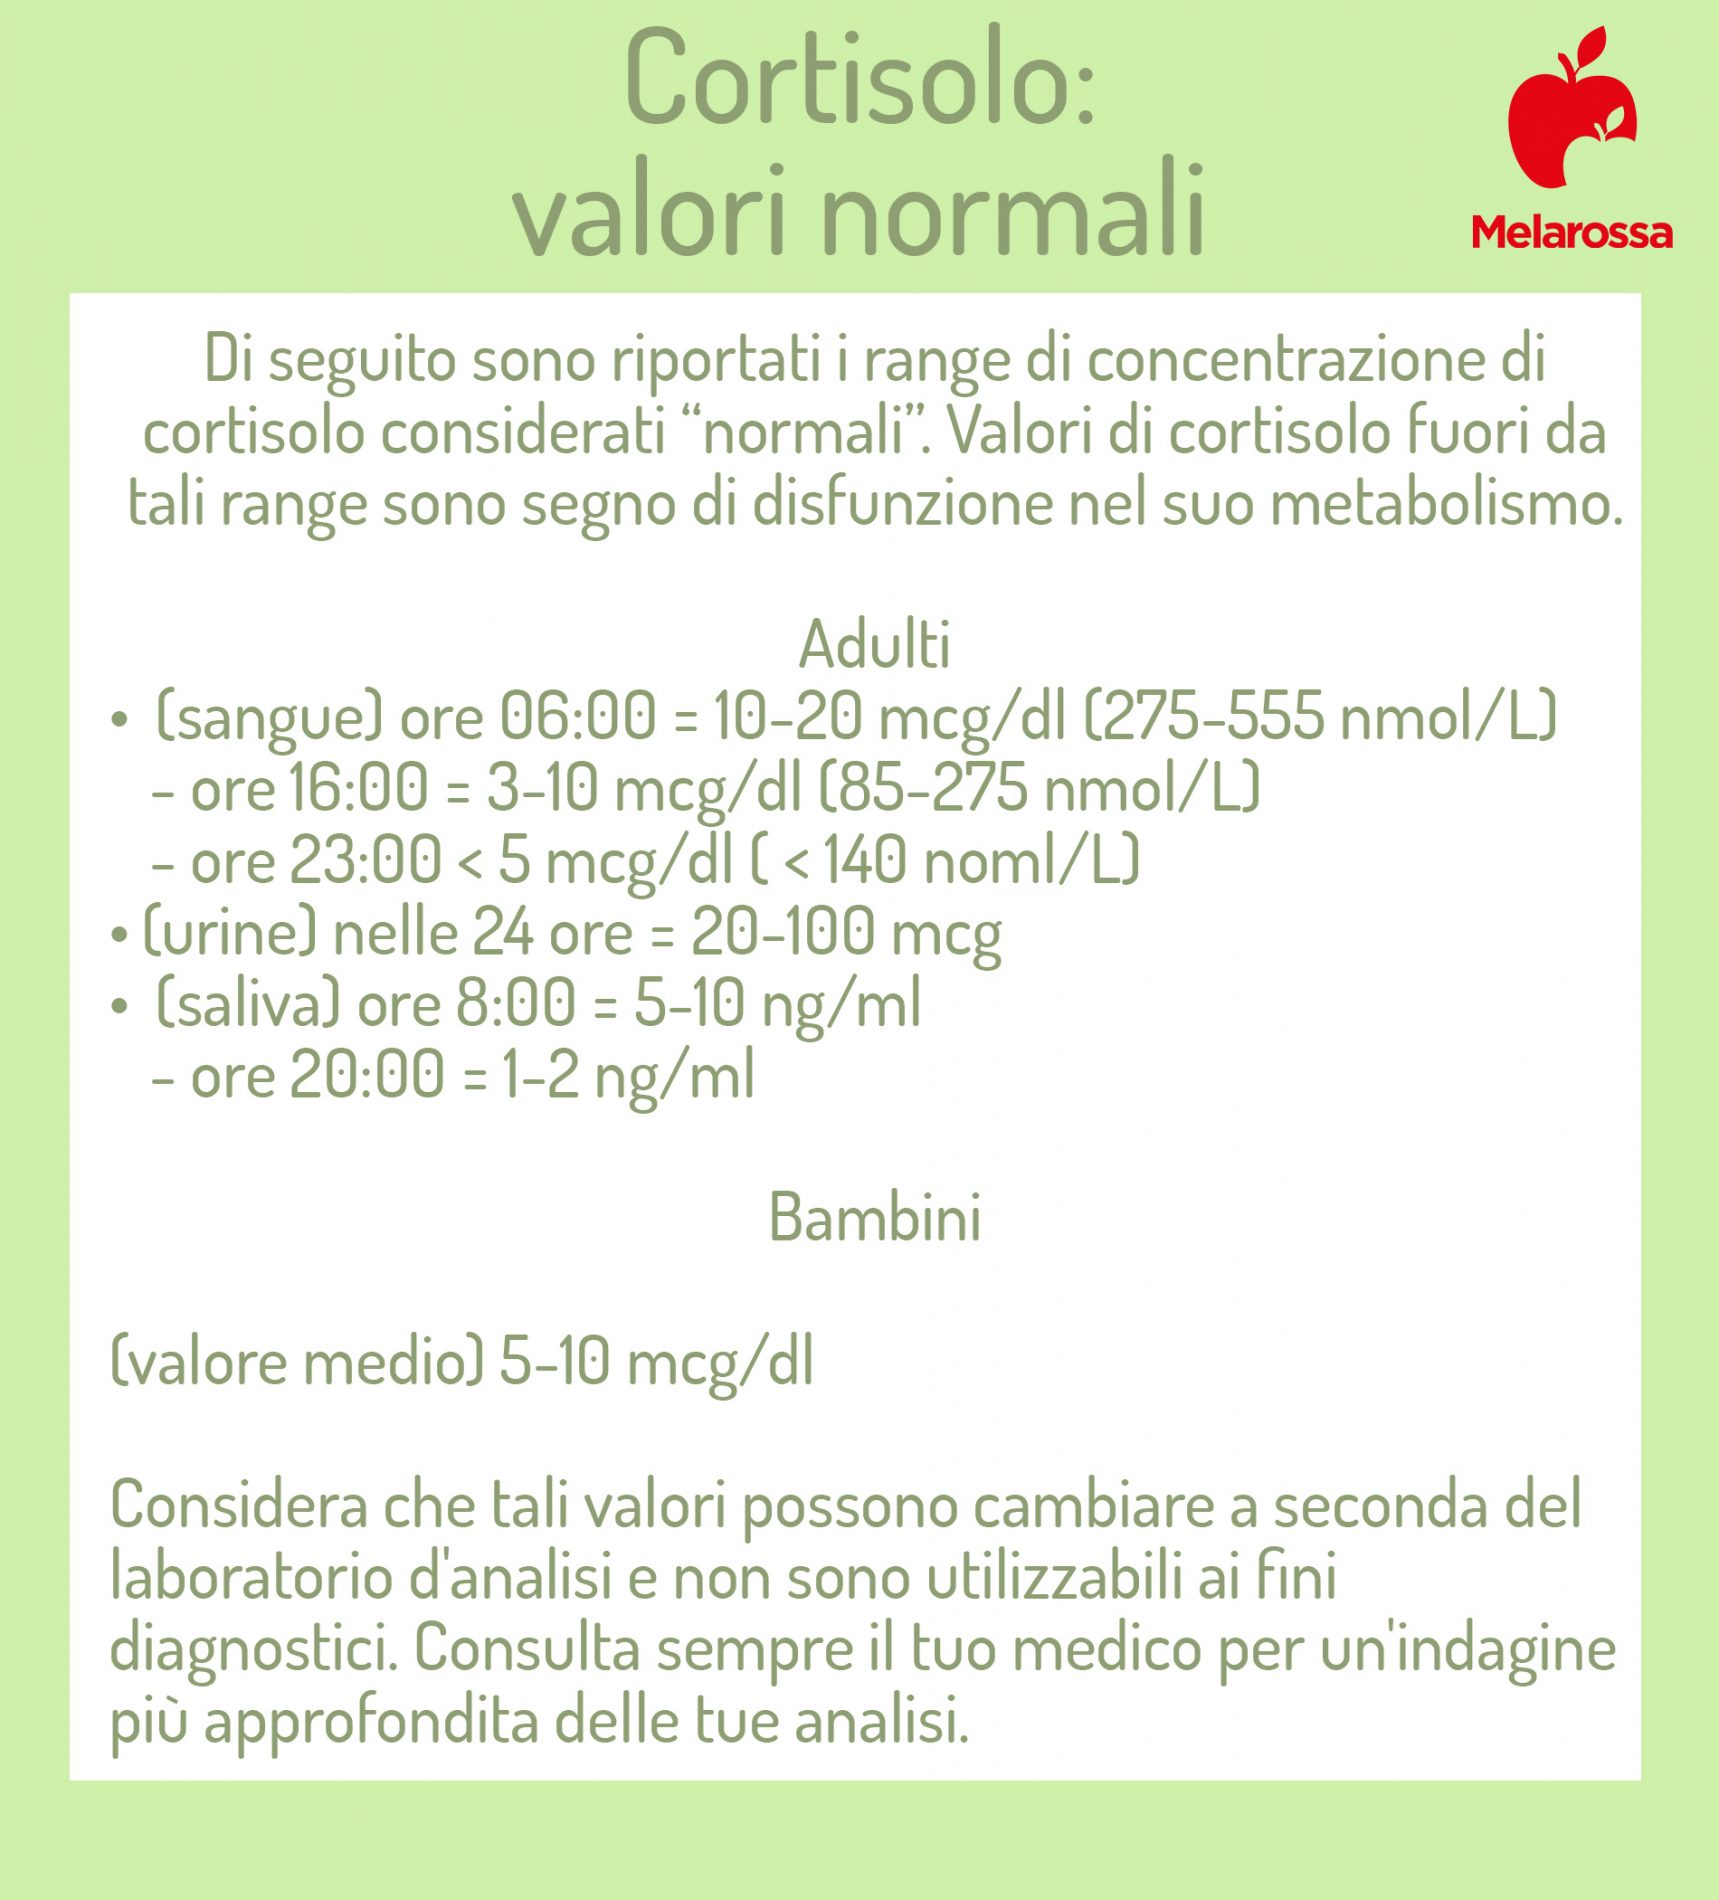 cortisolo: valori normali